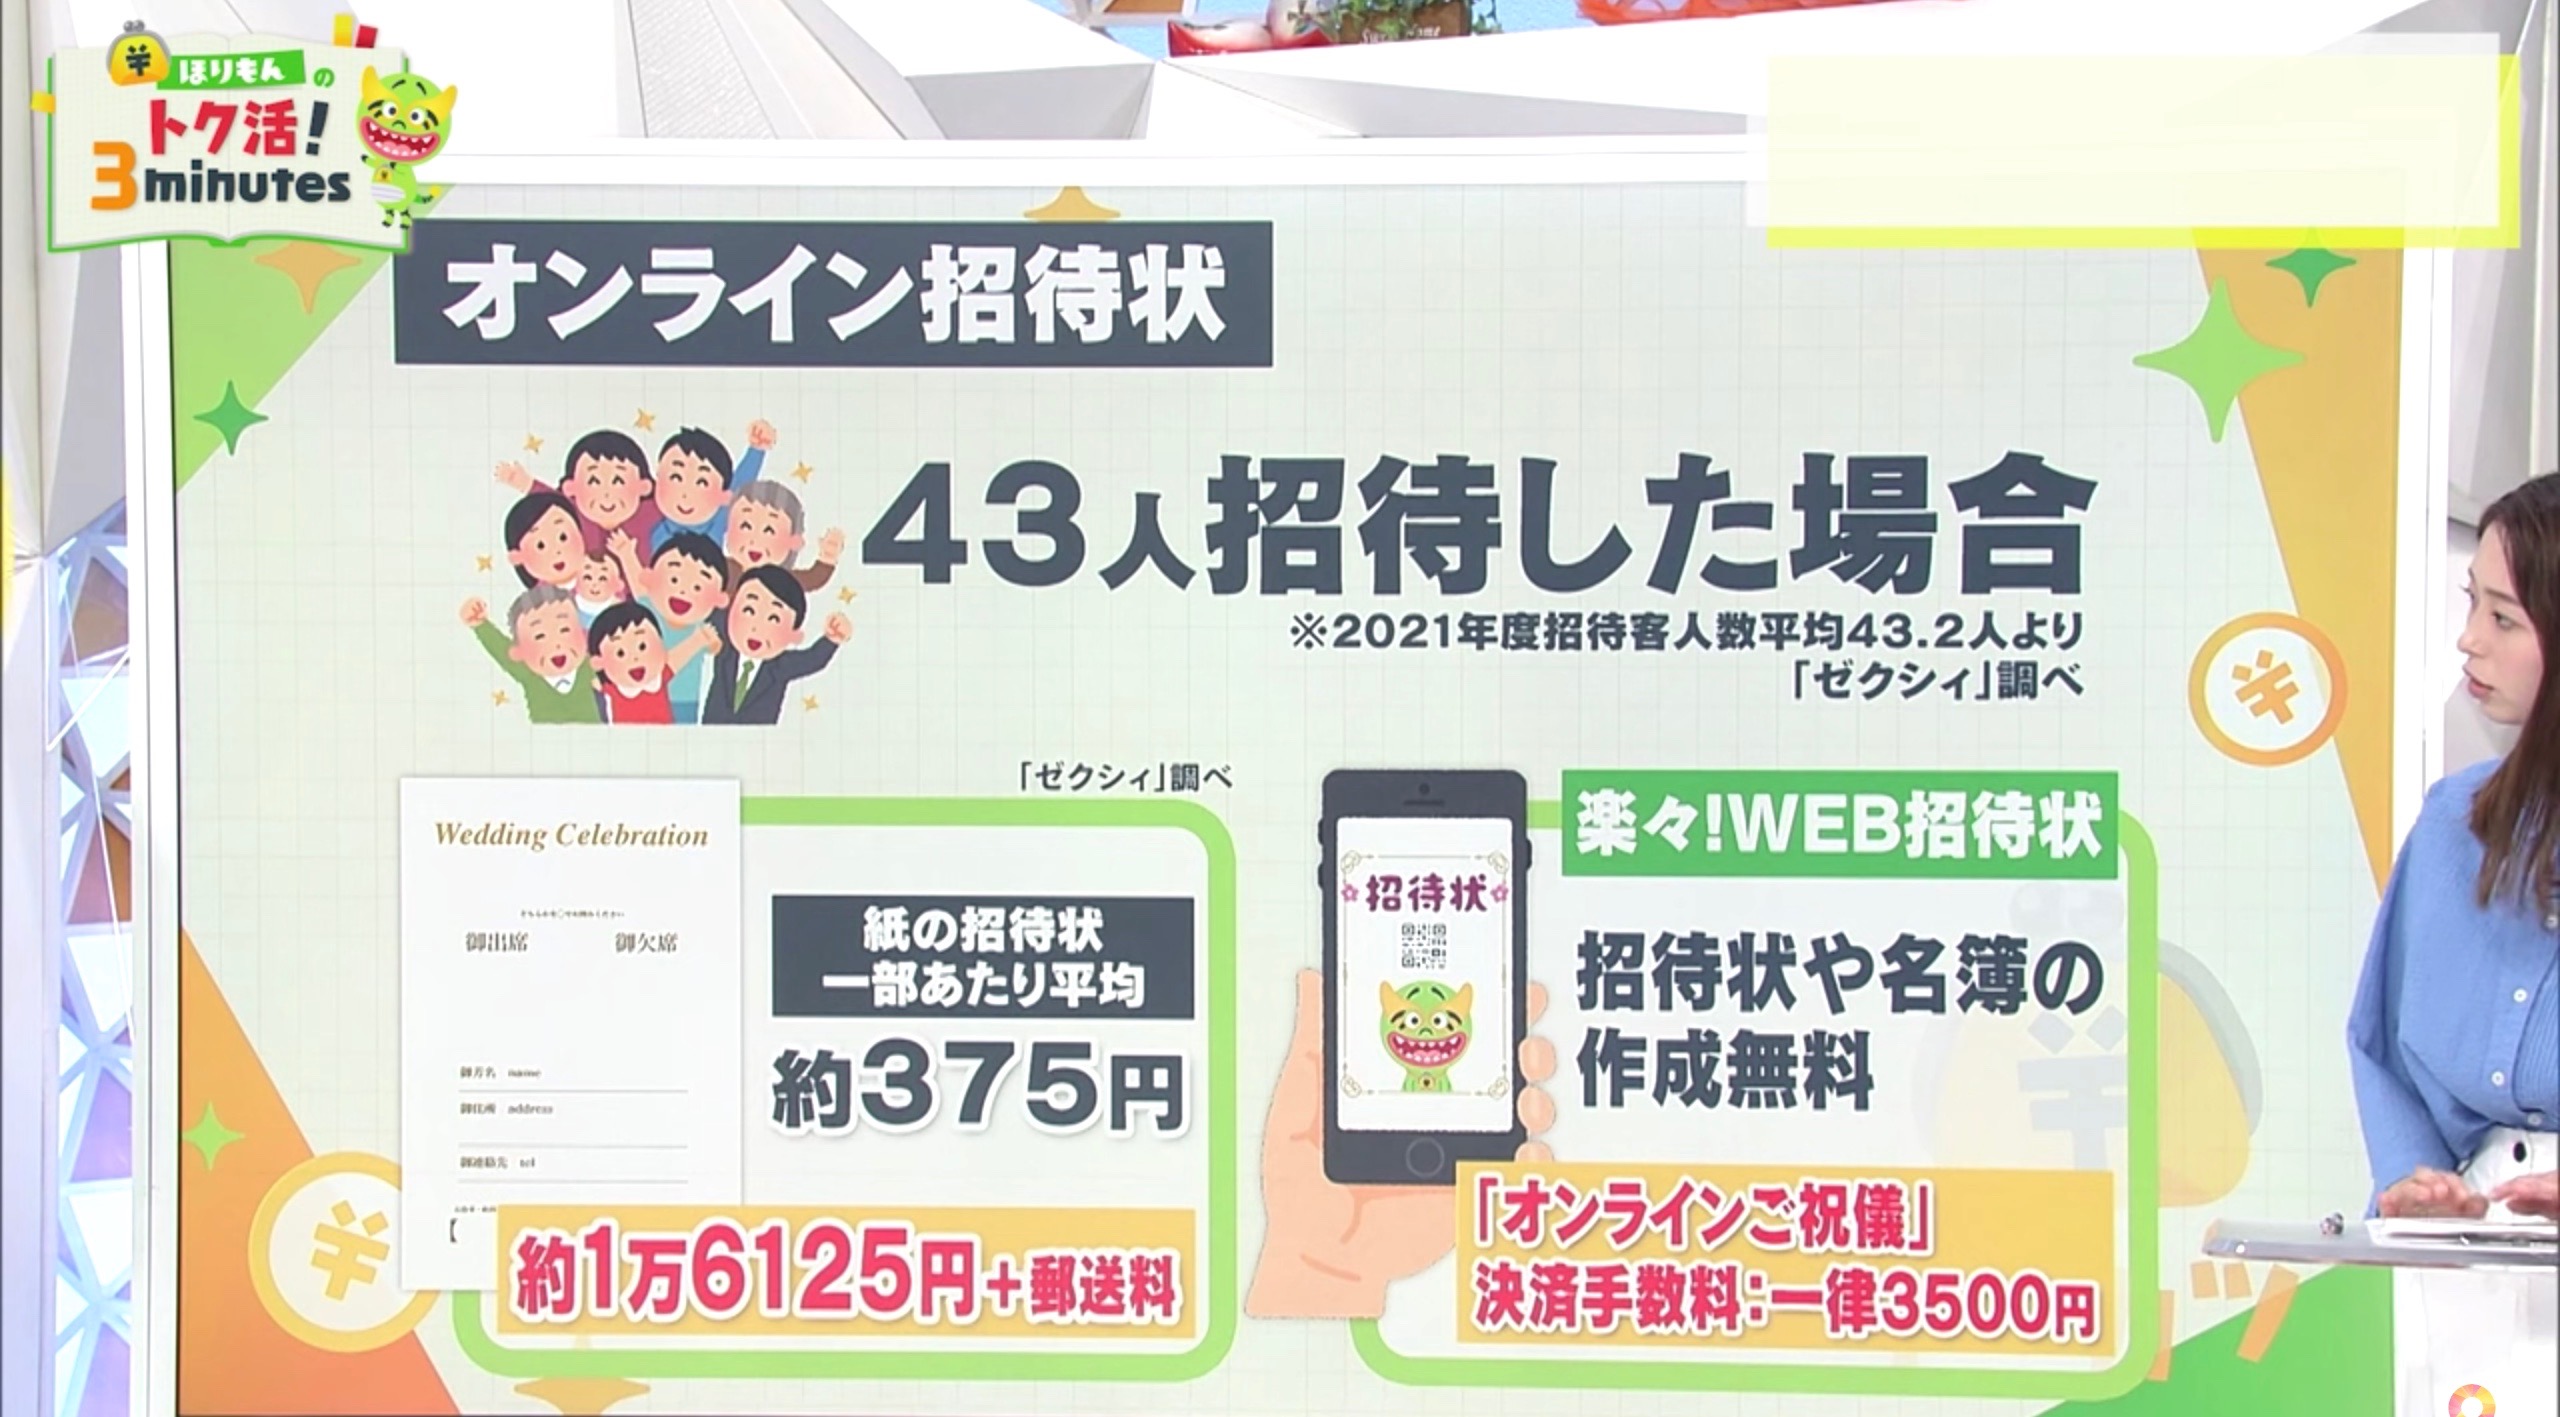 フジテレビ『めざまし8』にて事前決済業界最安一律3,500円が紹介されました。